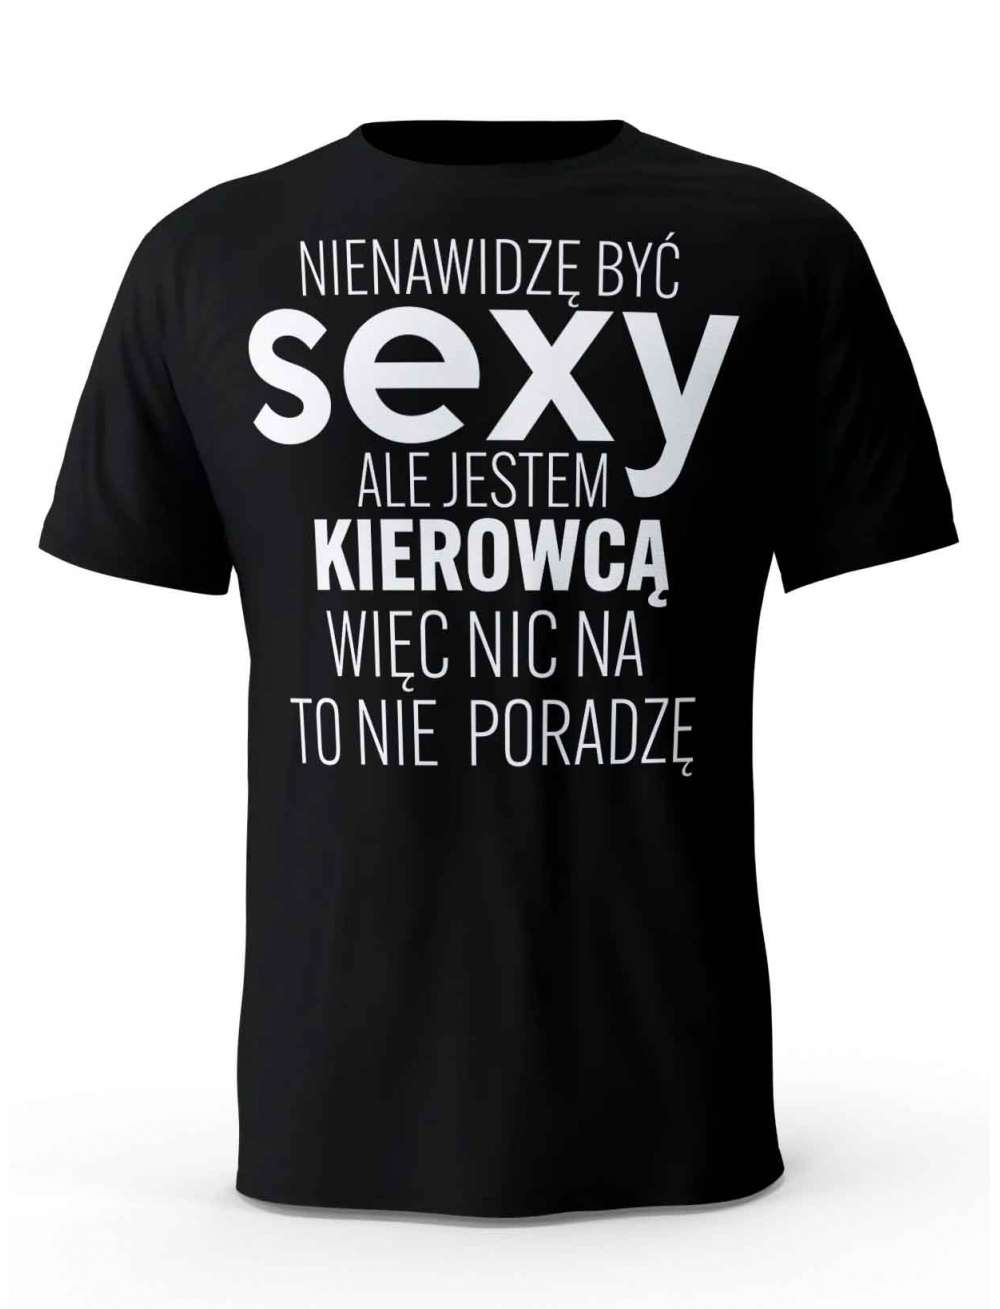 Koszulka Męska Sexy Kierowca, Prezent Dla Mężczyzny